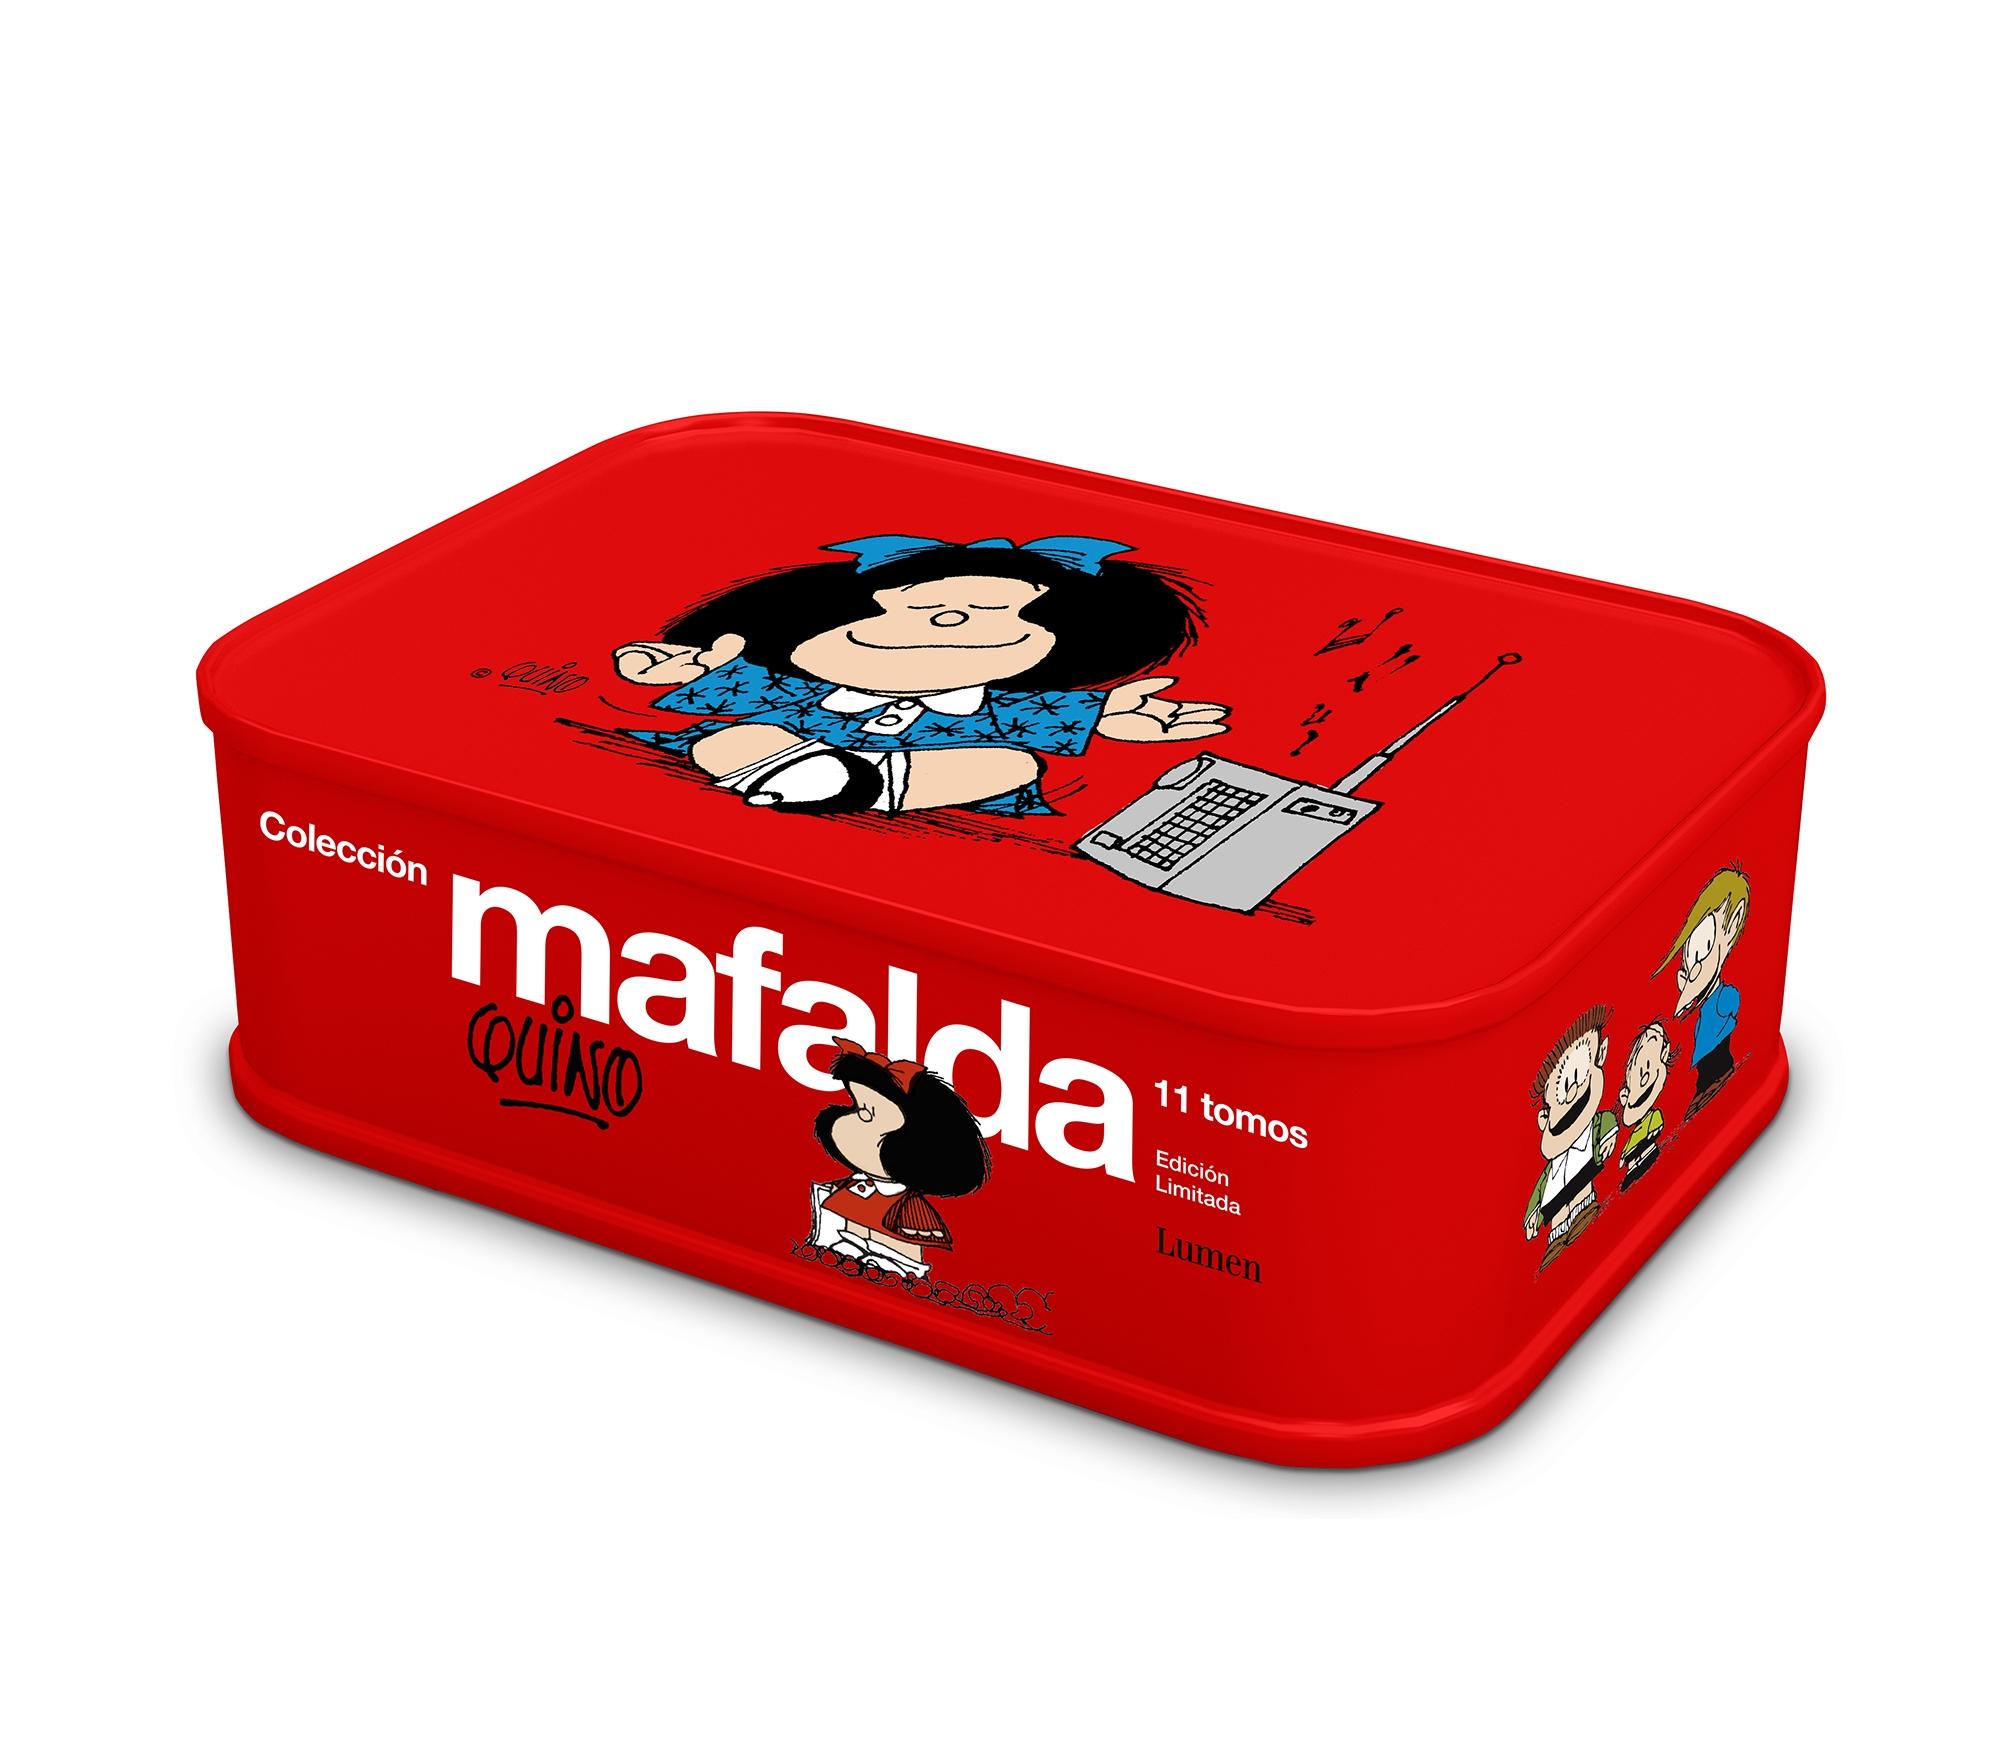 Colección Mafalda: 11 Tomos en una Lata (Color Rojo) (Edición Limitada). 